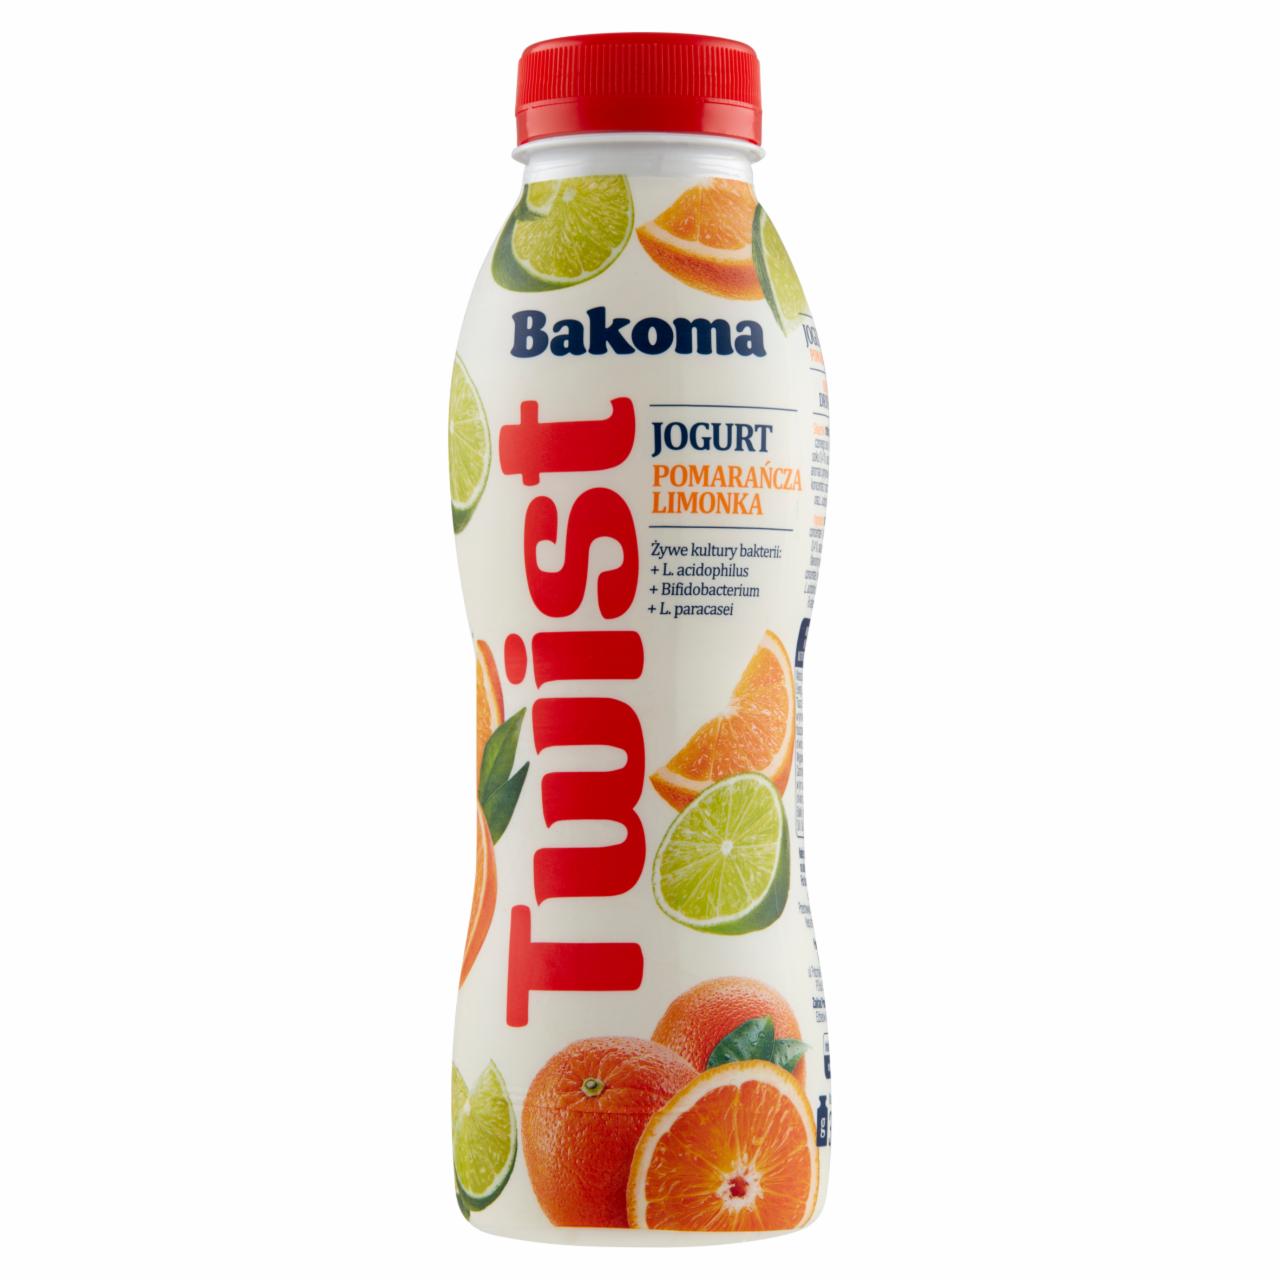 Zdjęcia - Bakoma Twist Jogurt pomarańcza-limonka 380 g